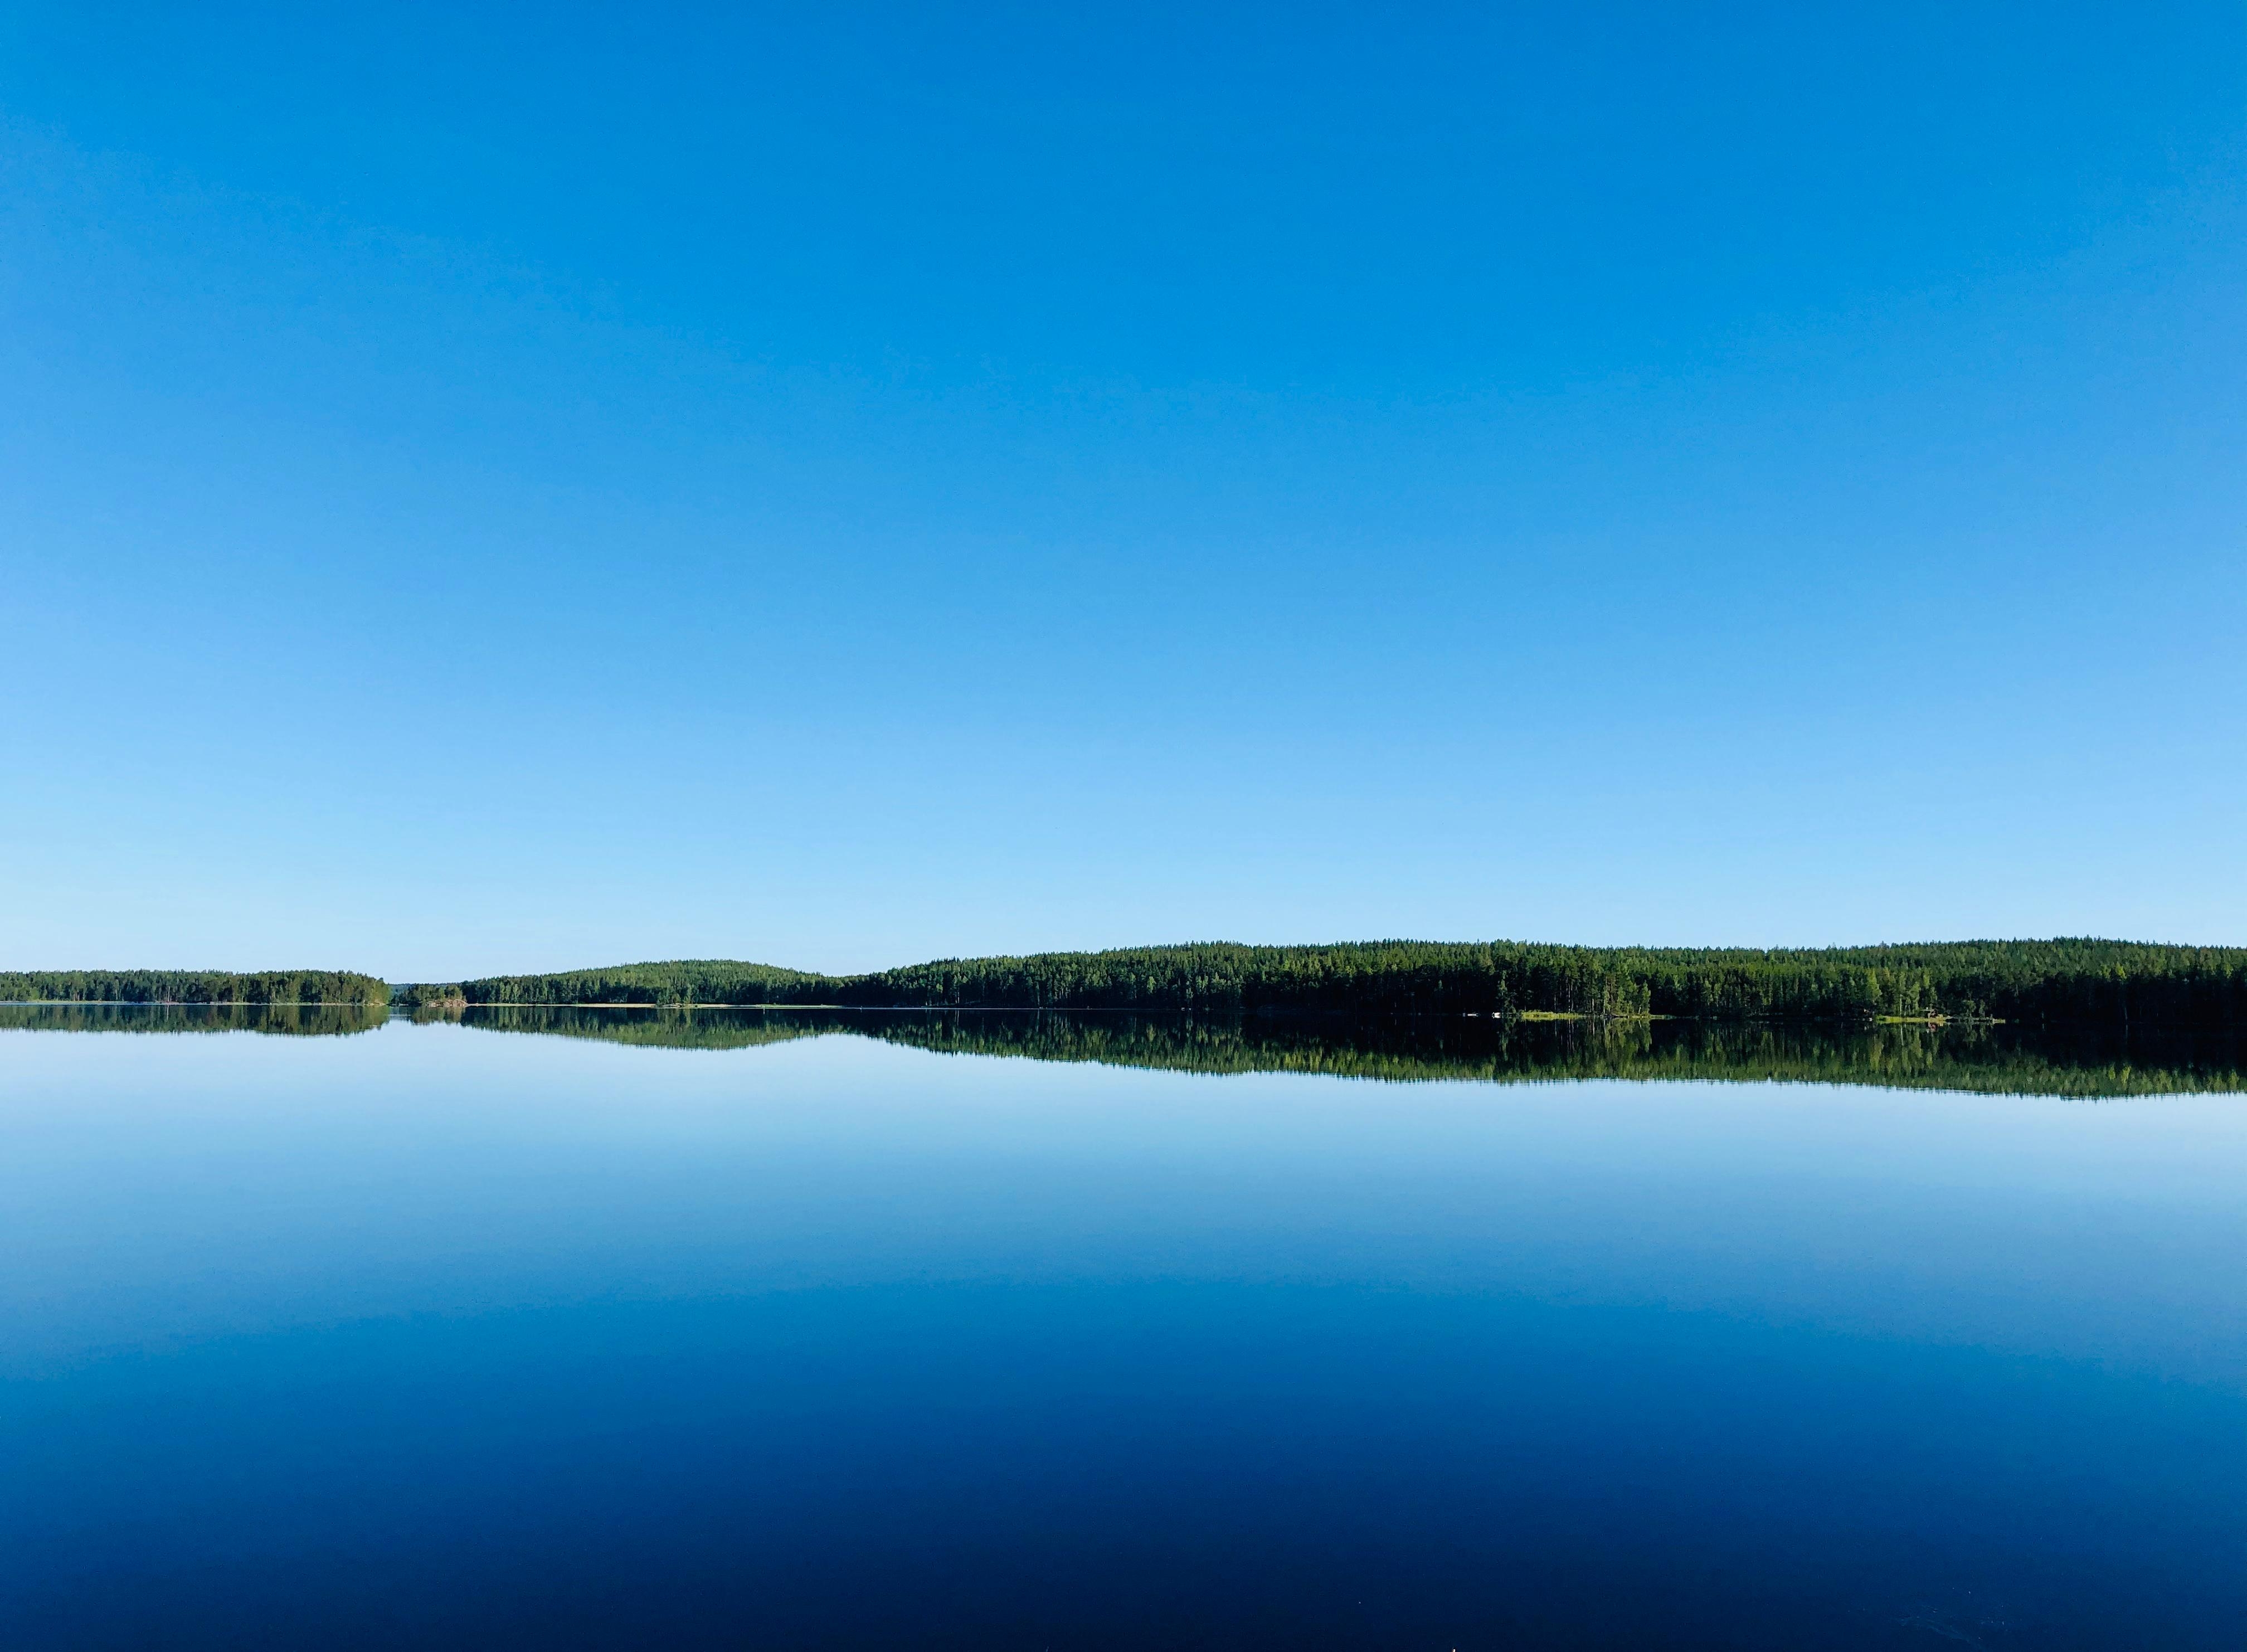 Wasser, ob See oder Meer, so entspannend!
Morgenstimmung am Saimaa... #sommerinfinnland
#naturliebe #travelchallenge